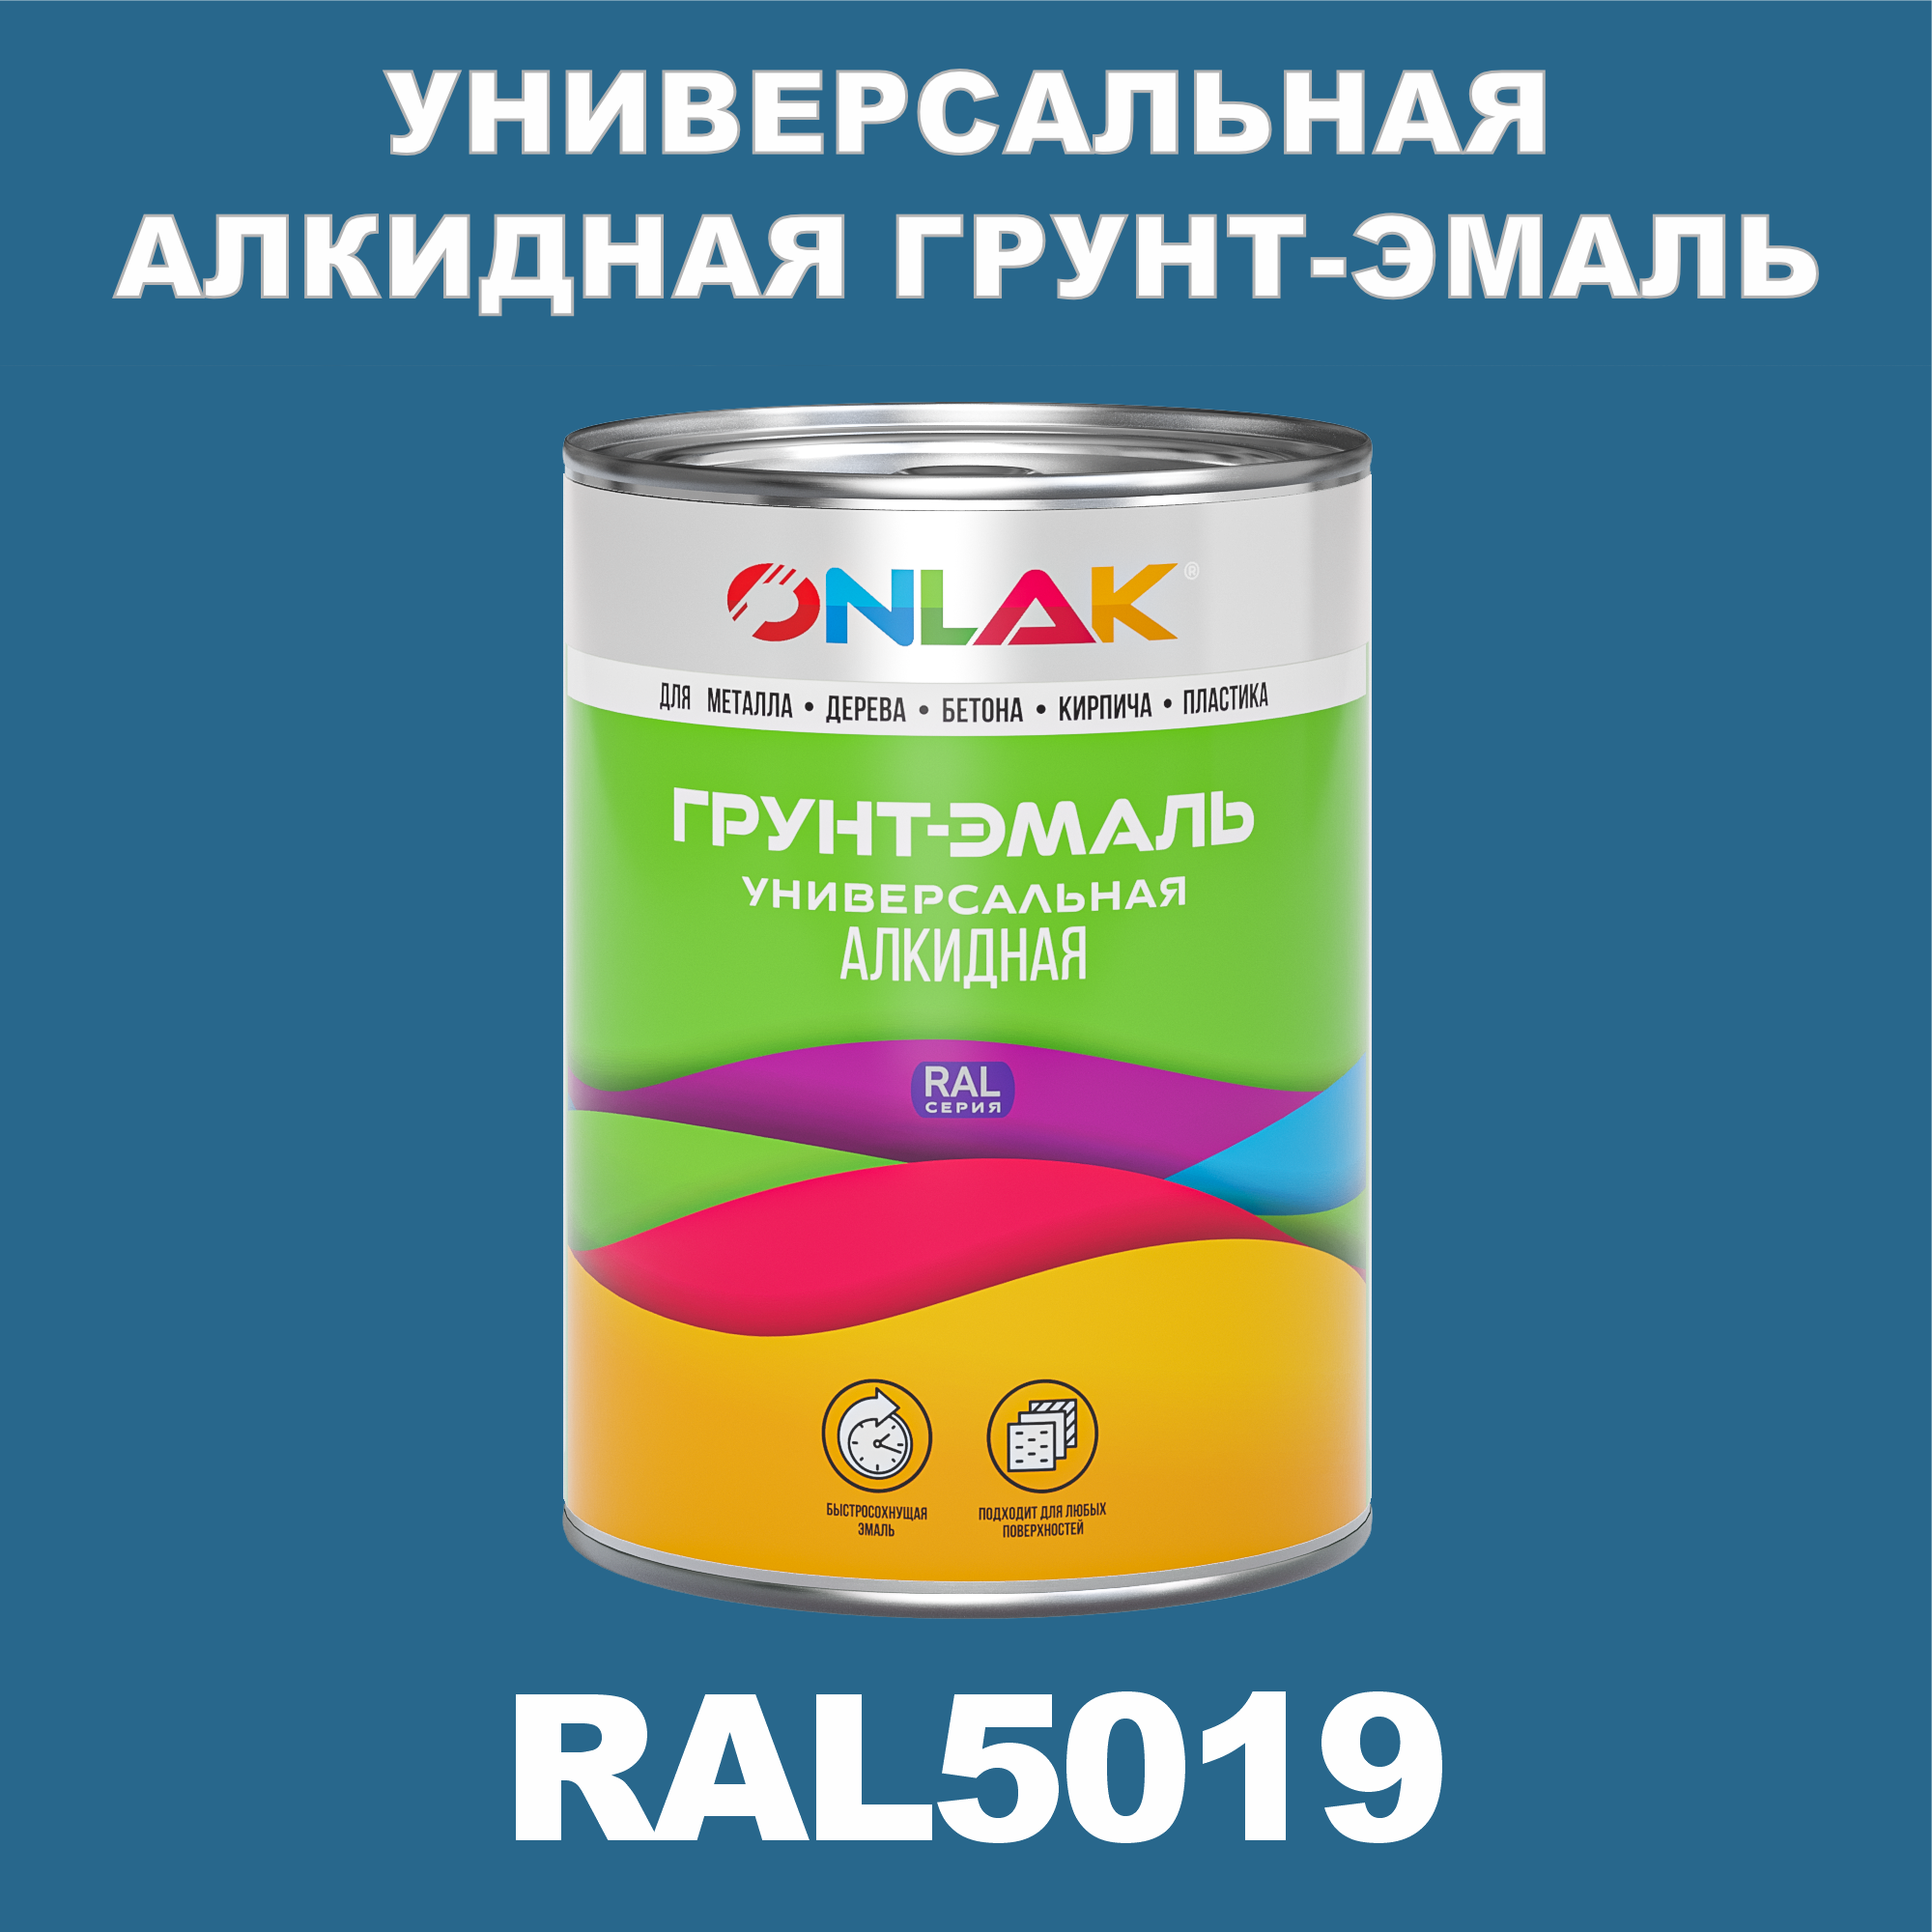 Грунт-эмаль ONLAK 1К RAL5019 антикоррозионная алкидная по металлу по ржавчине 1 кг